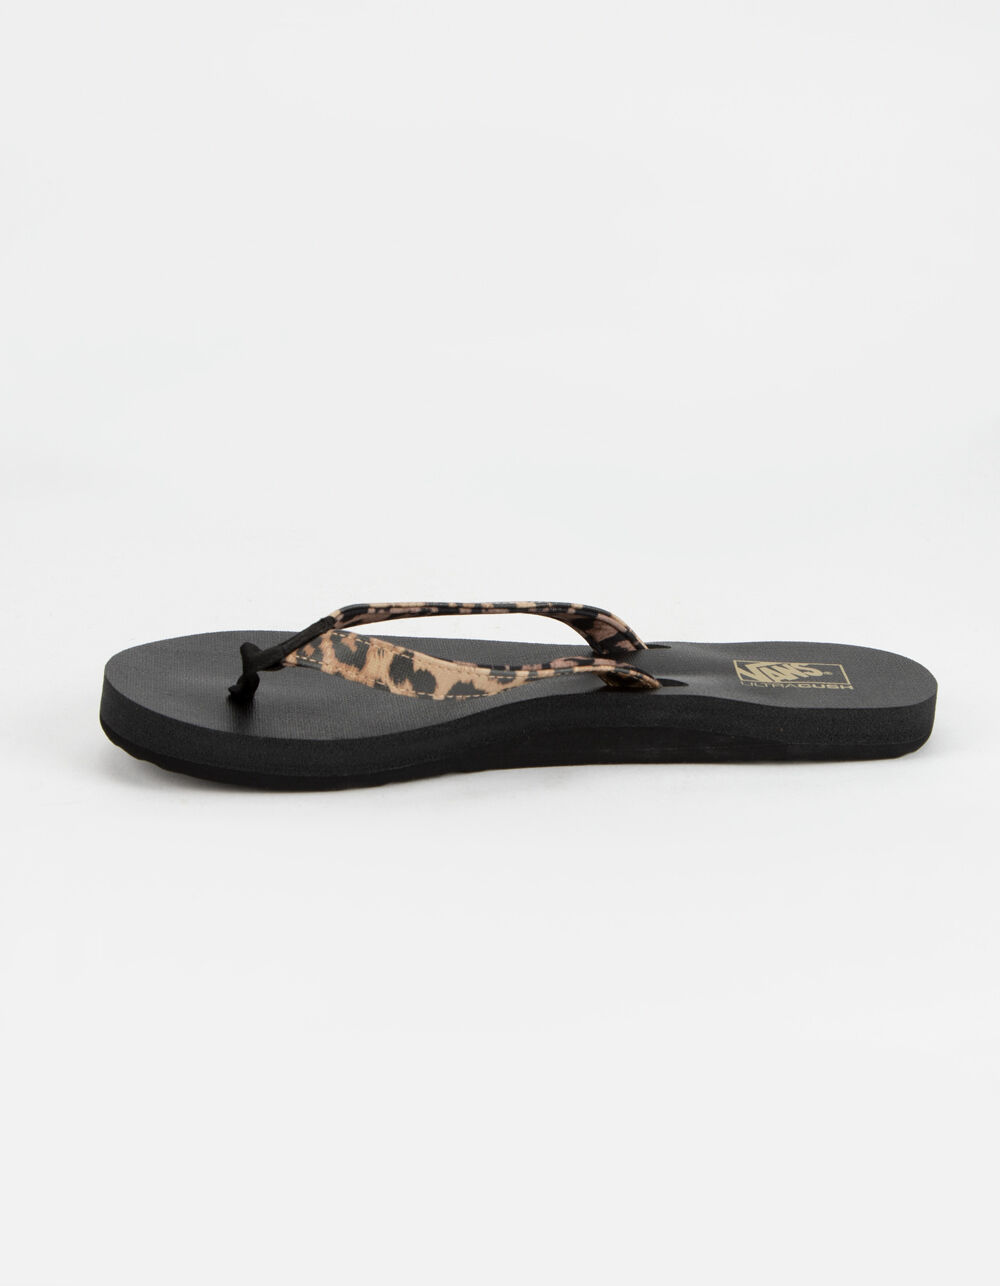 VANS Soft-Top Leopard Womens Sandals - LEOPARD | Tillys